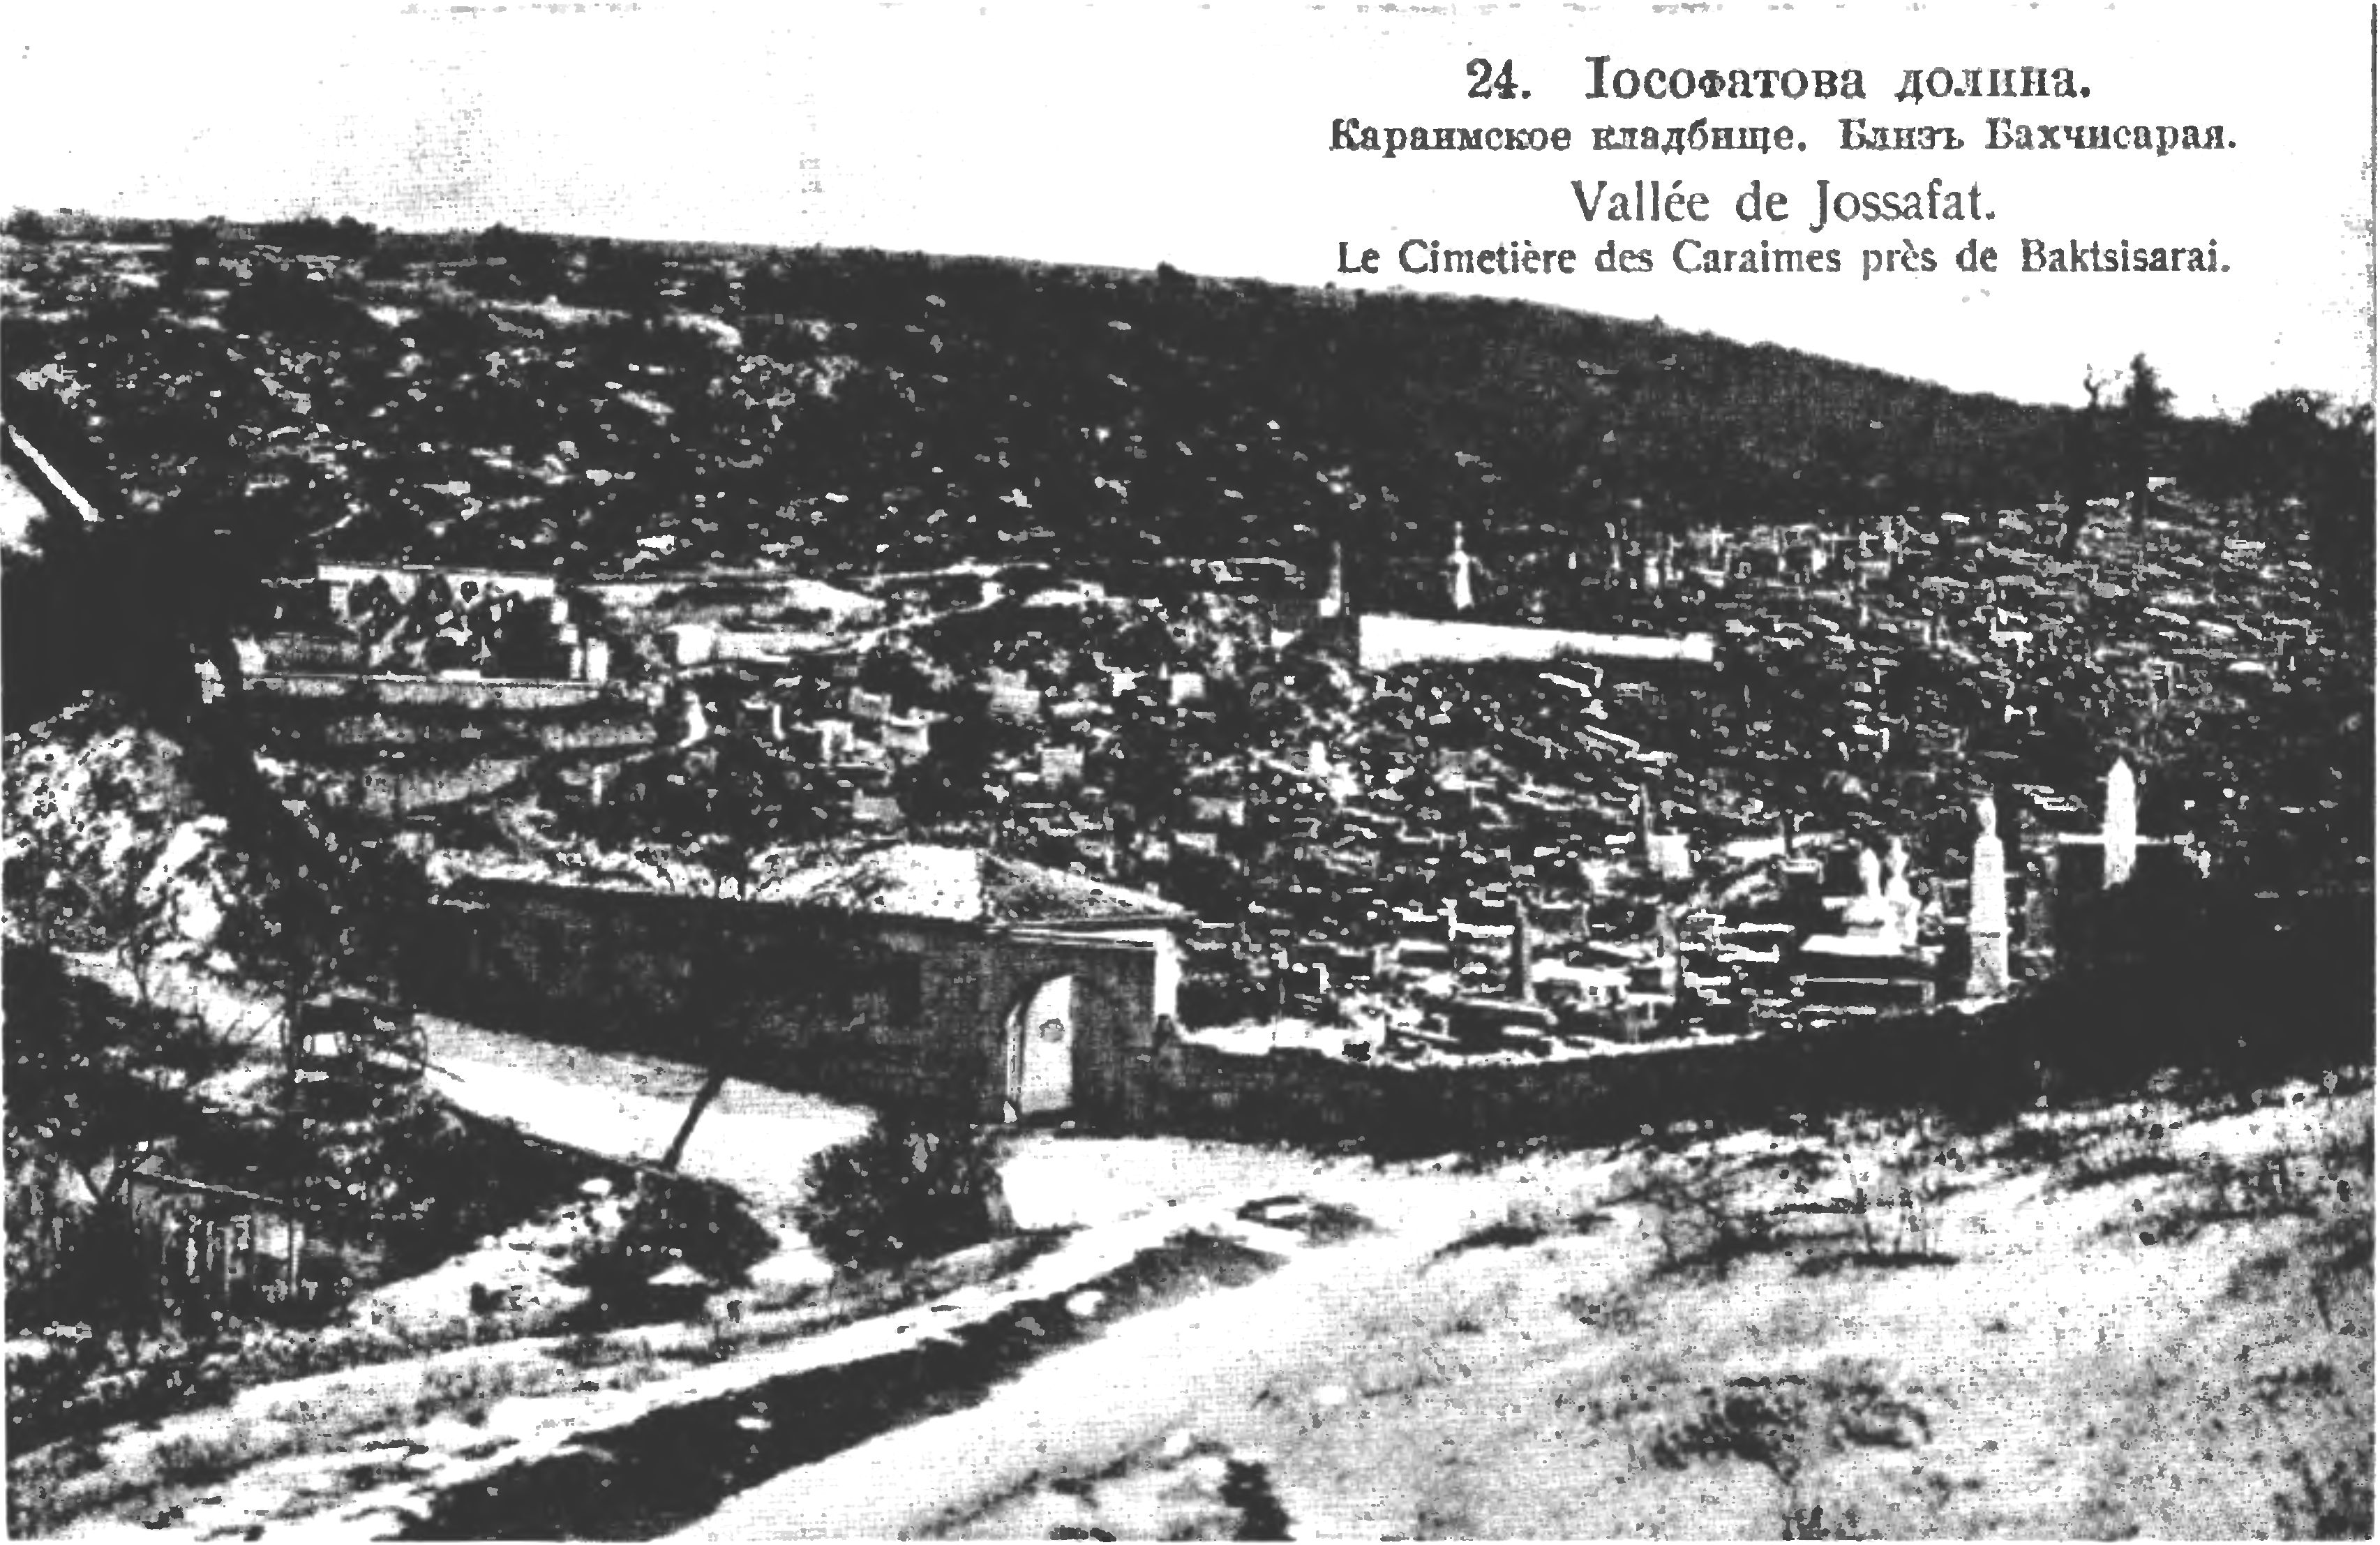 Караимское кладбище в Иосафатовой долине близ Чуфут-Кале в начале XX века